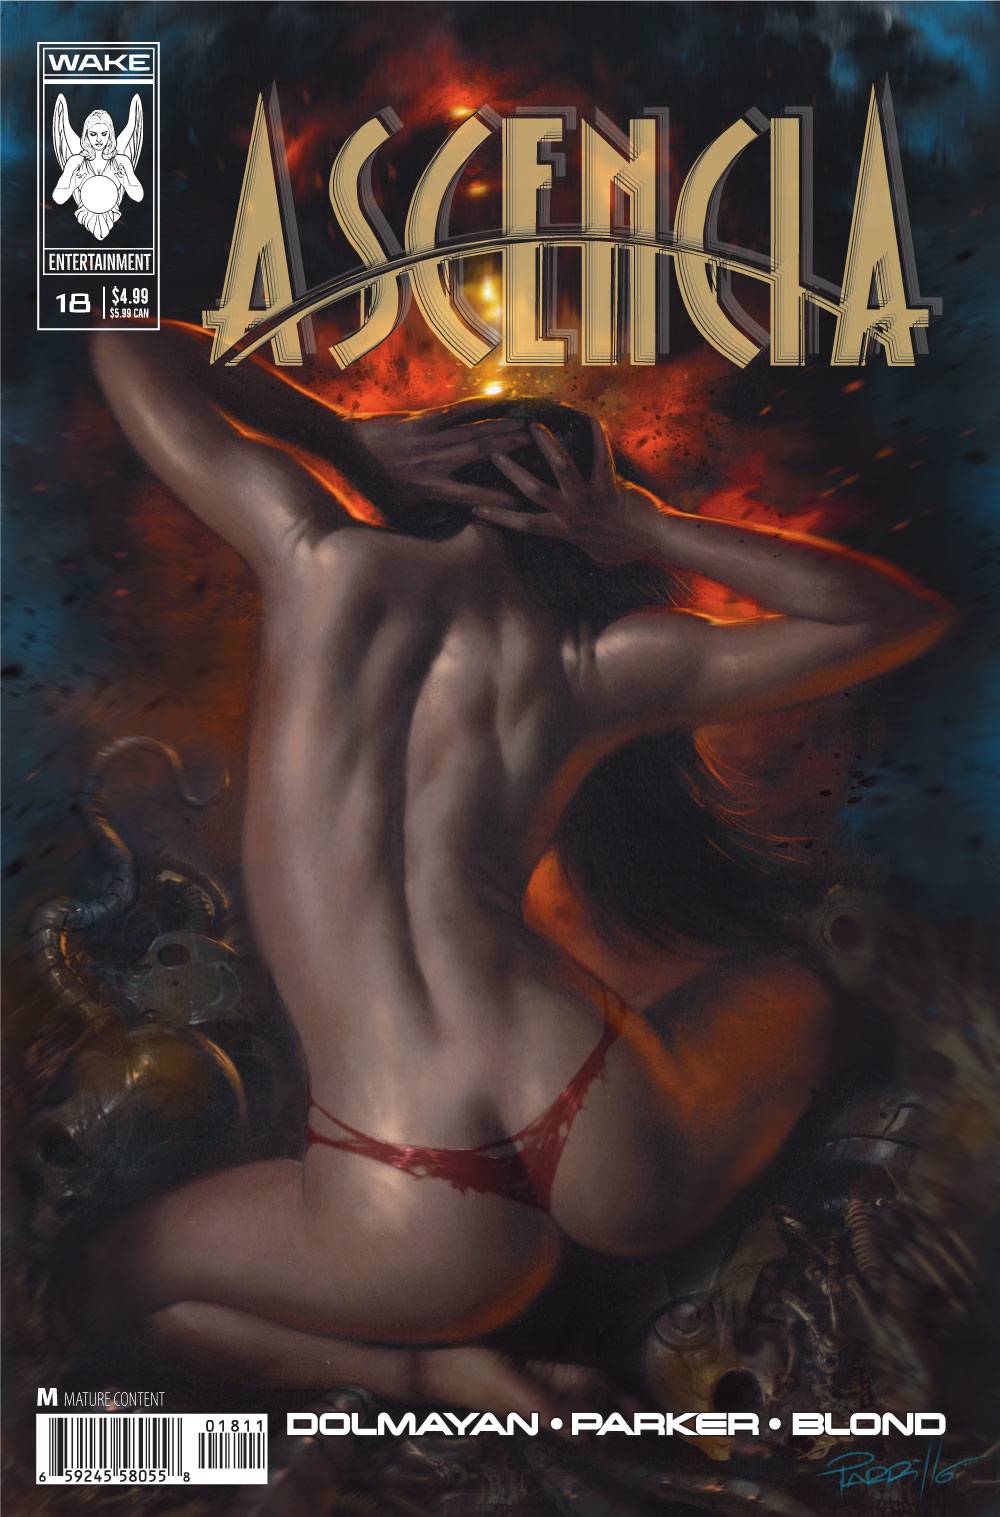 ASCENCIA #18 (LUCIO PARILLO COVER)